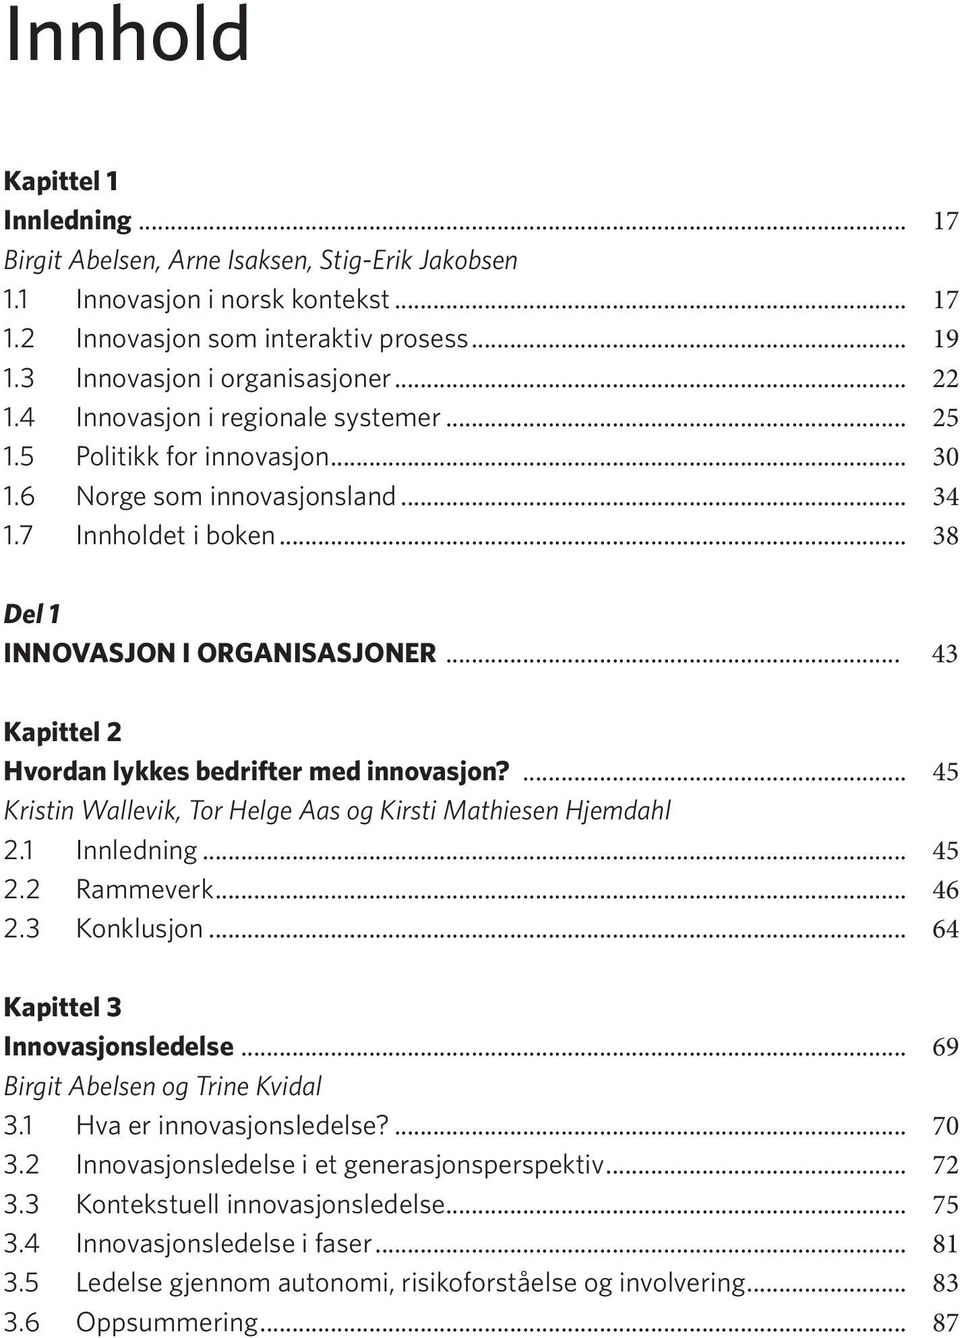 .. 43 Kapittel 2 Hvordan lykkes bedrifter med innovasjon?... 45 Kristin Wallevik, Tor Helge Aas og Kirsti Mathiesen Hjemdahl 2.1 Innledning... 45 2.2 Rammeverk... 46 2.3 Konklusjon.